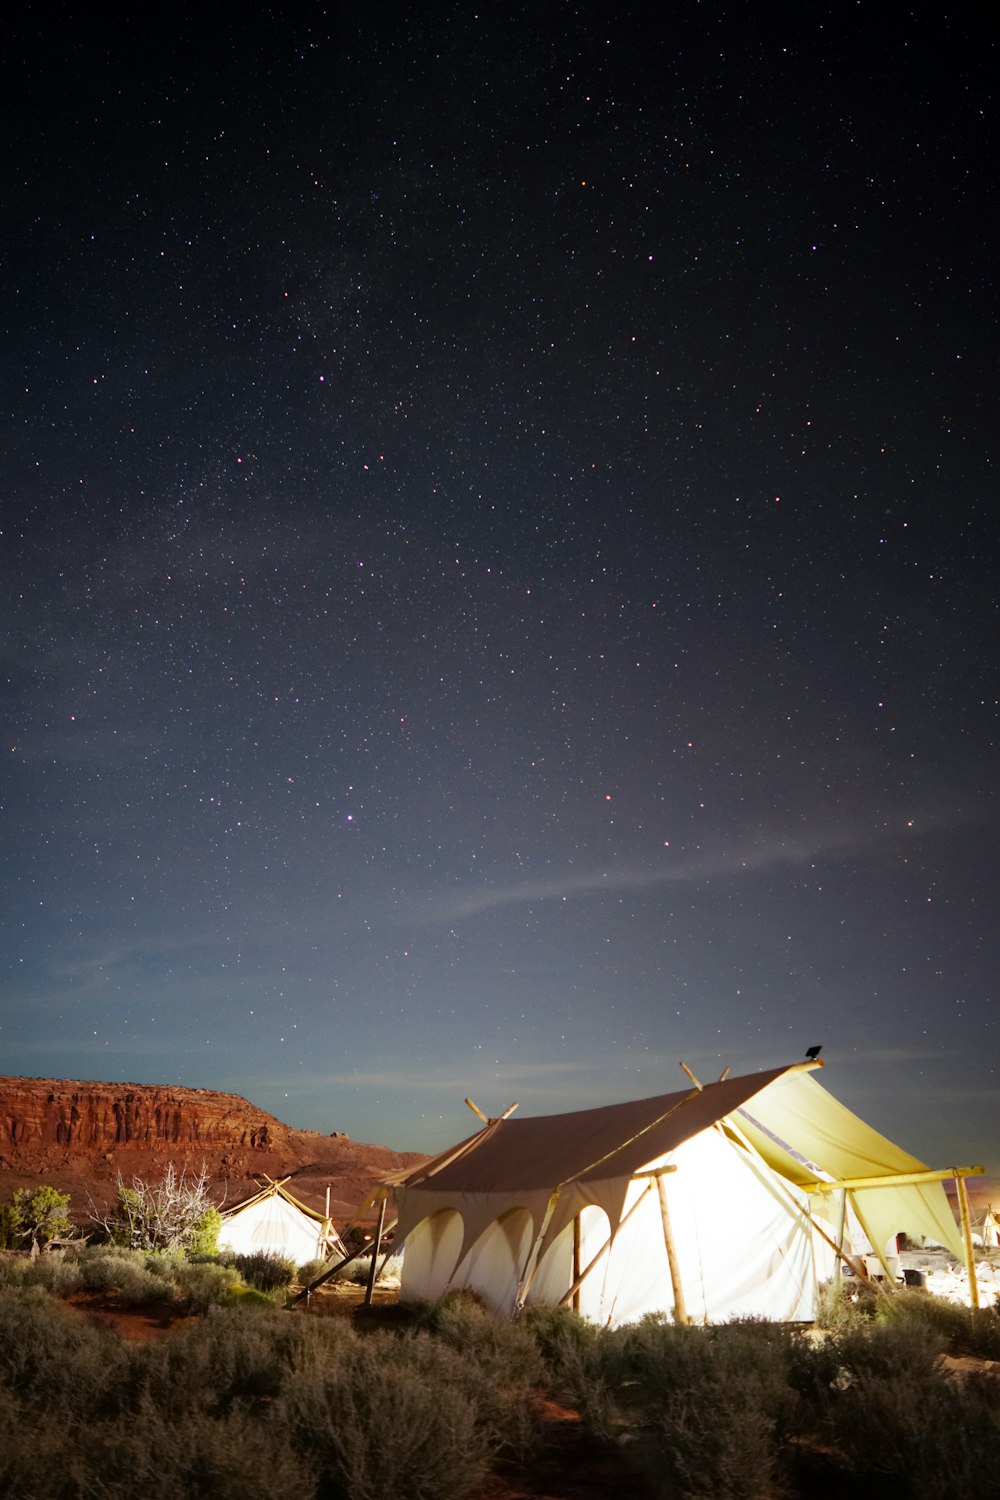 Tienda de campaña de cabaña blanca en campo abierto durante la noche